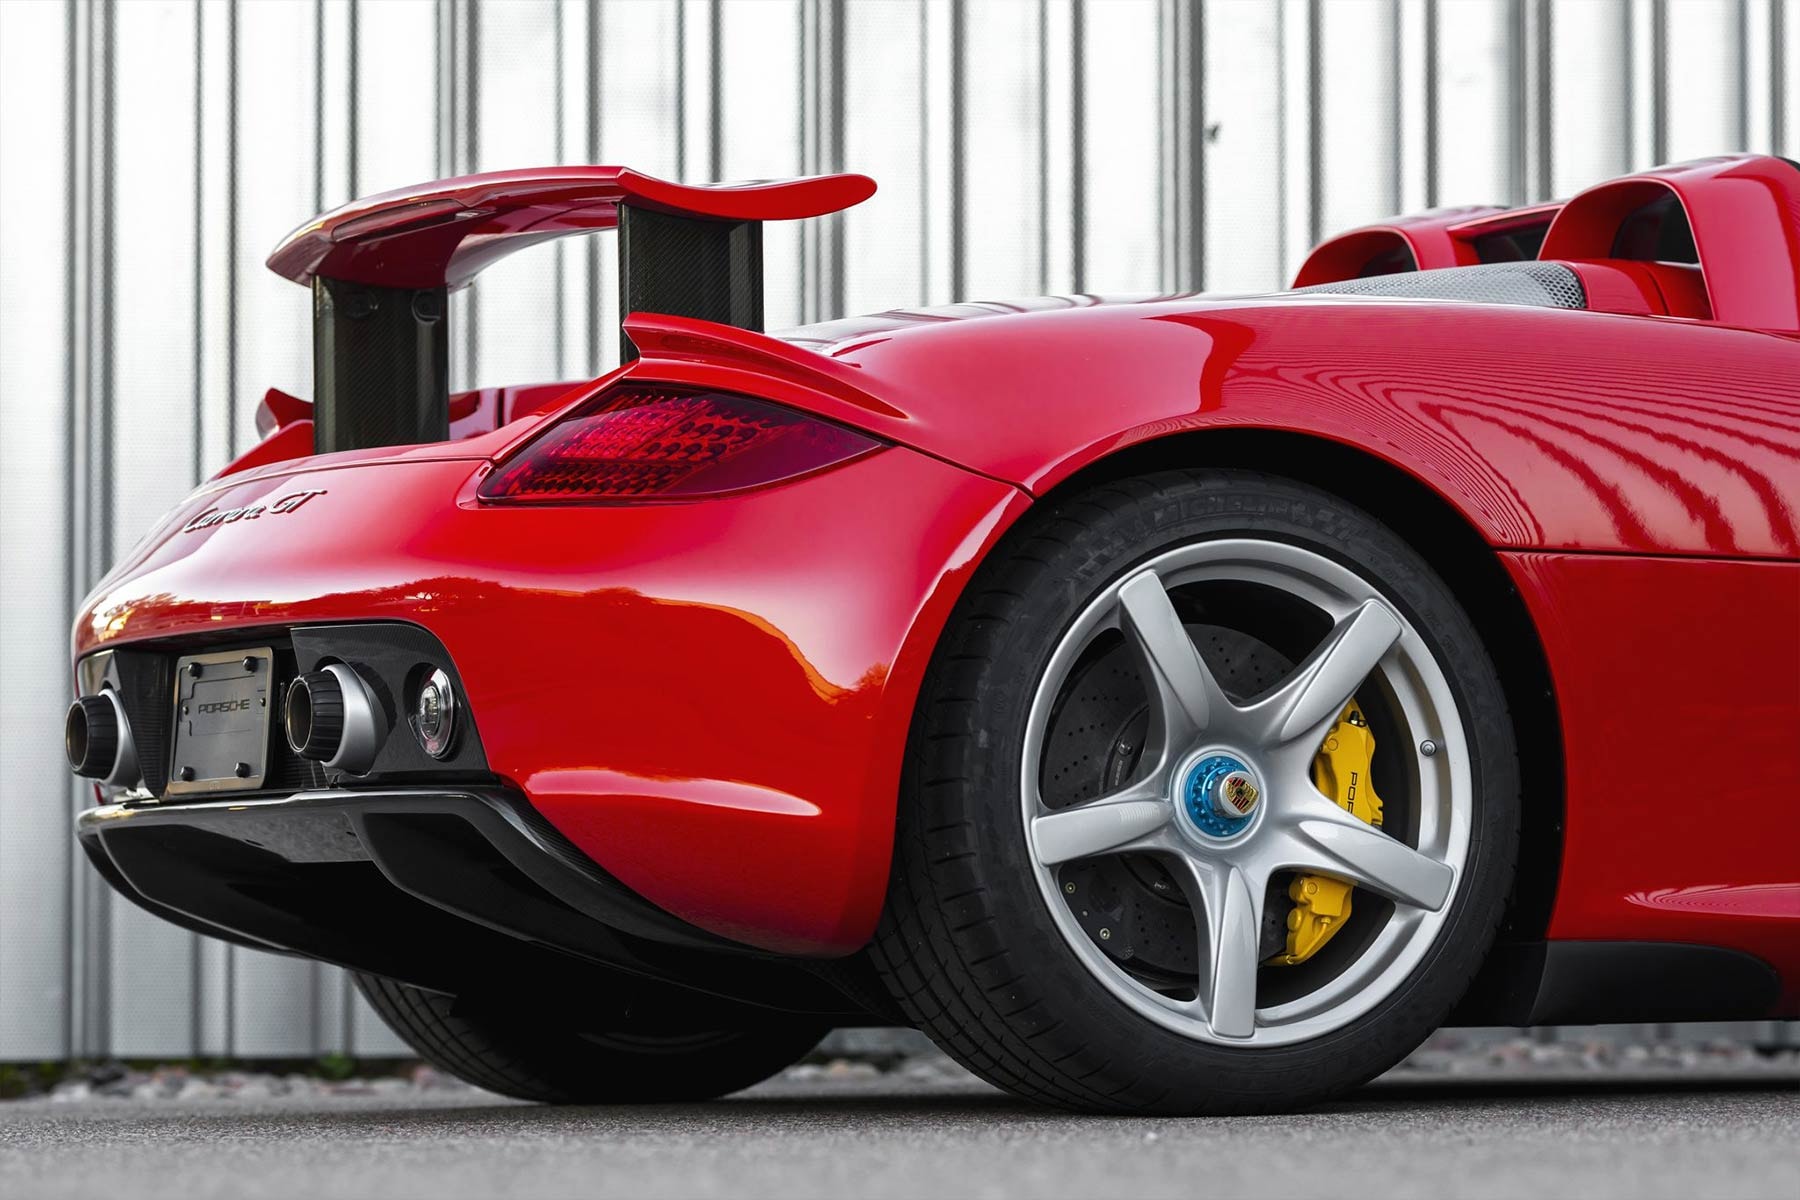 Bring a trailer 780-Mile 2005 Porsche Carrera GT $1.9 million usd sale German automotive supercars sports cars auctions 